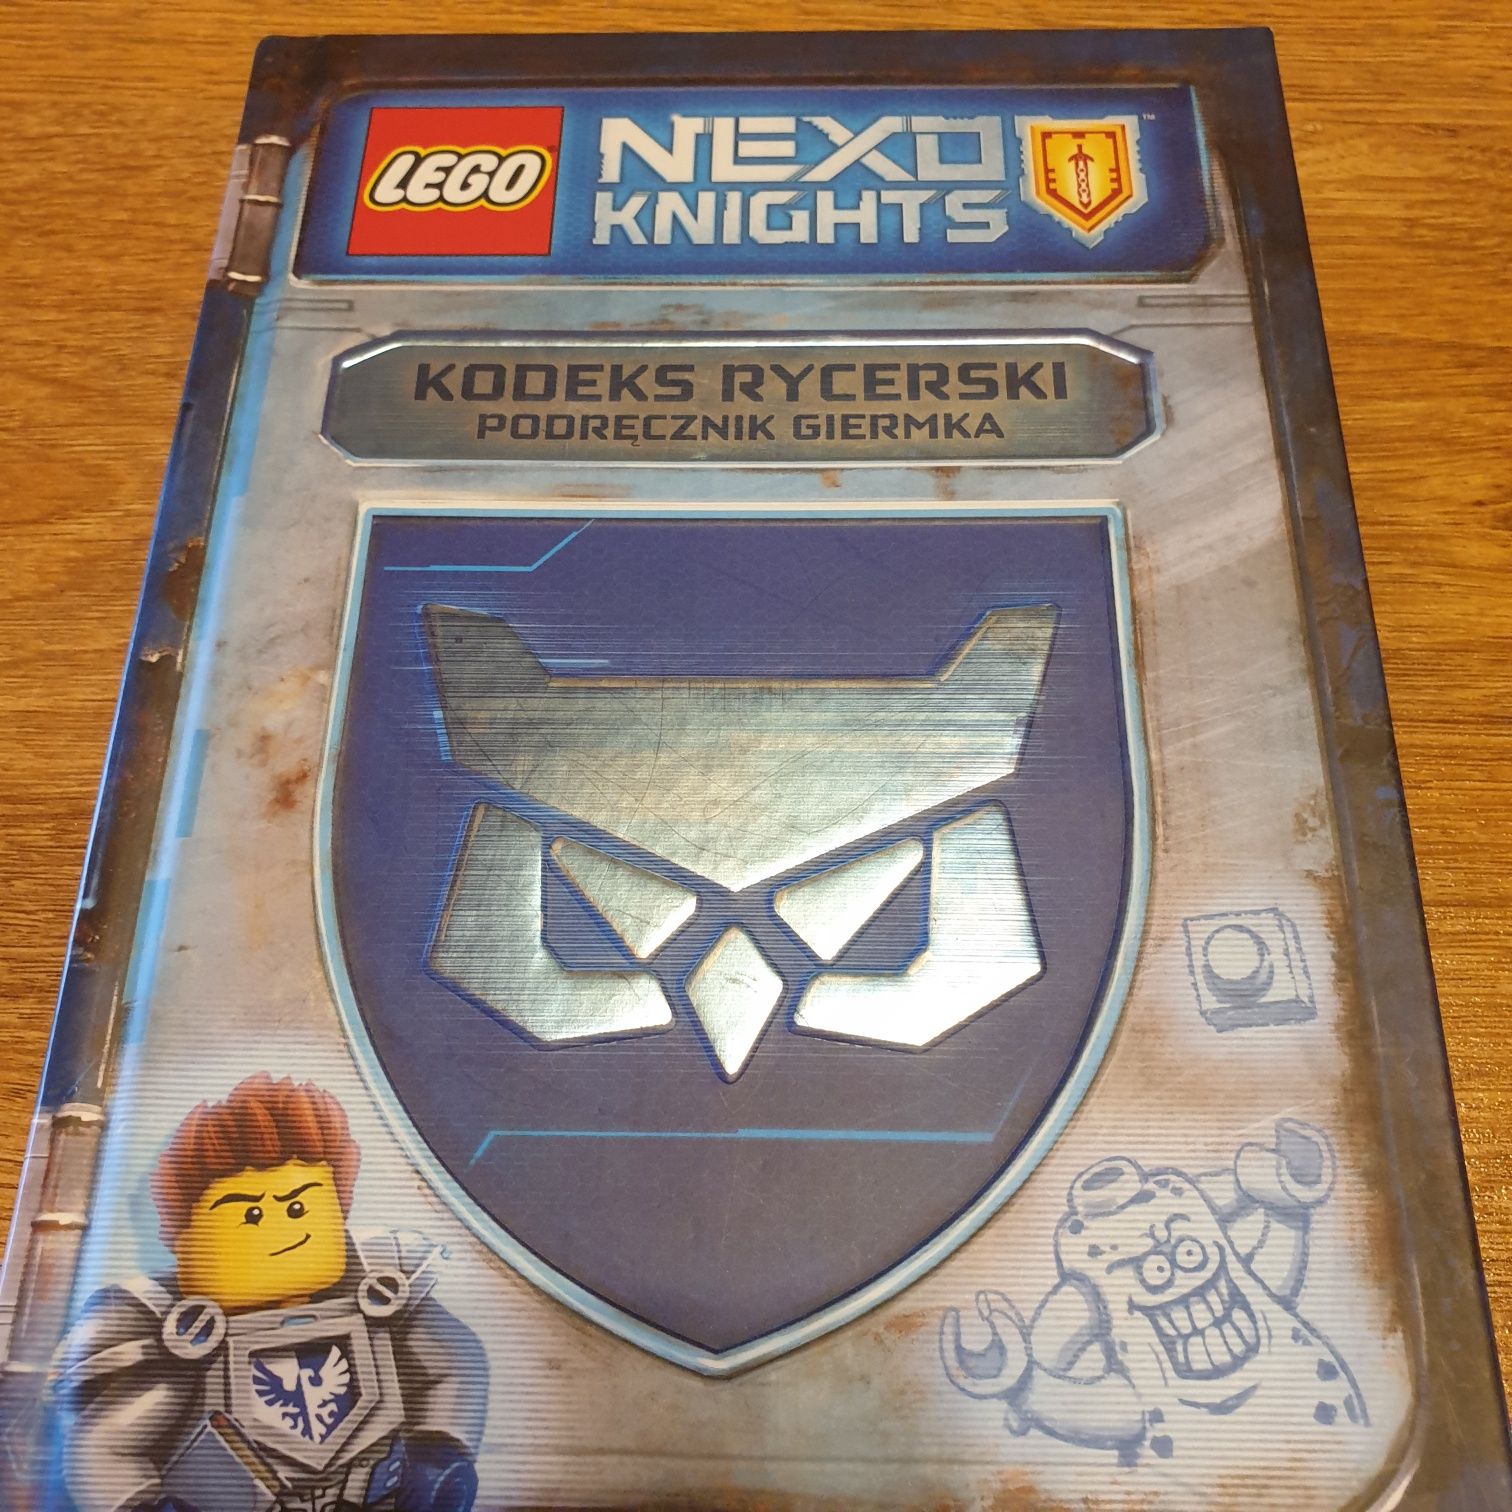 "Nexo Knights. Kodeks rycerski. Podręcznik giermna"